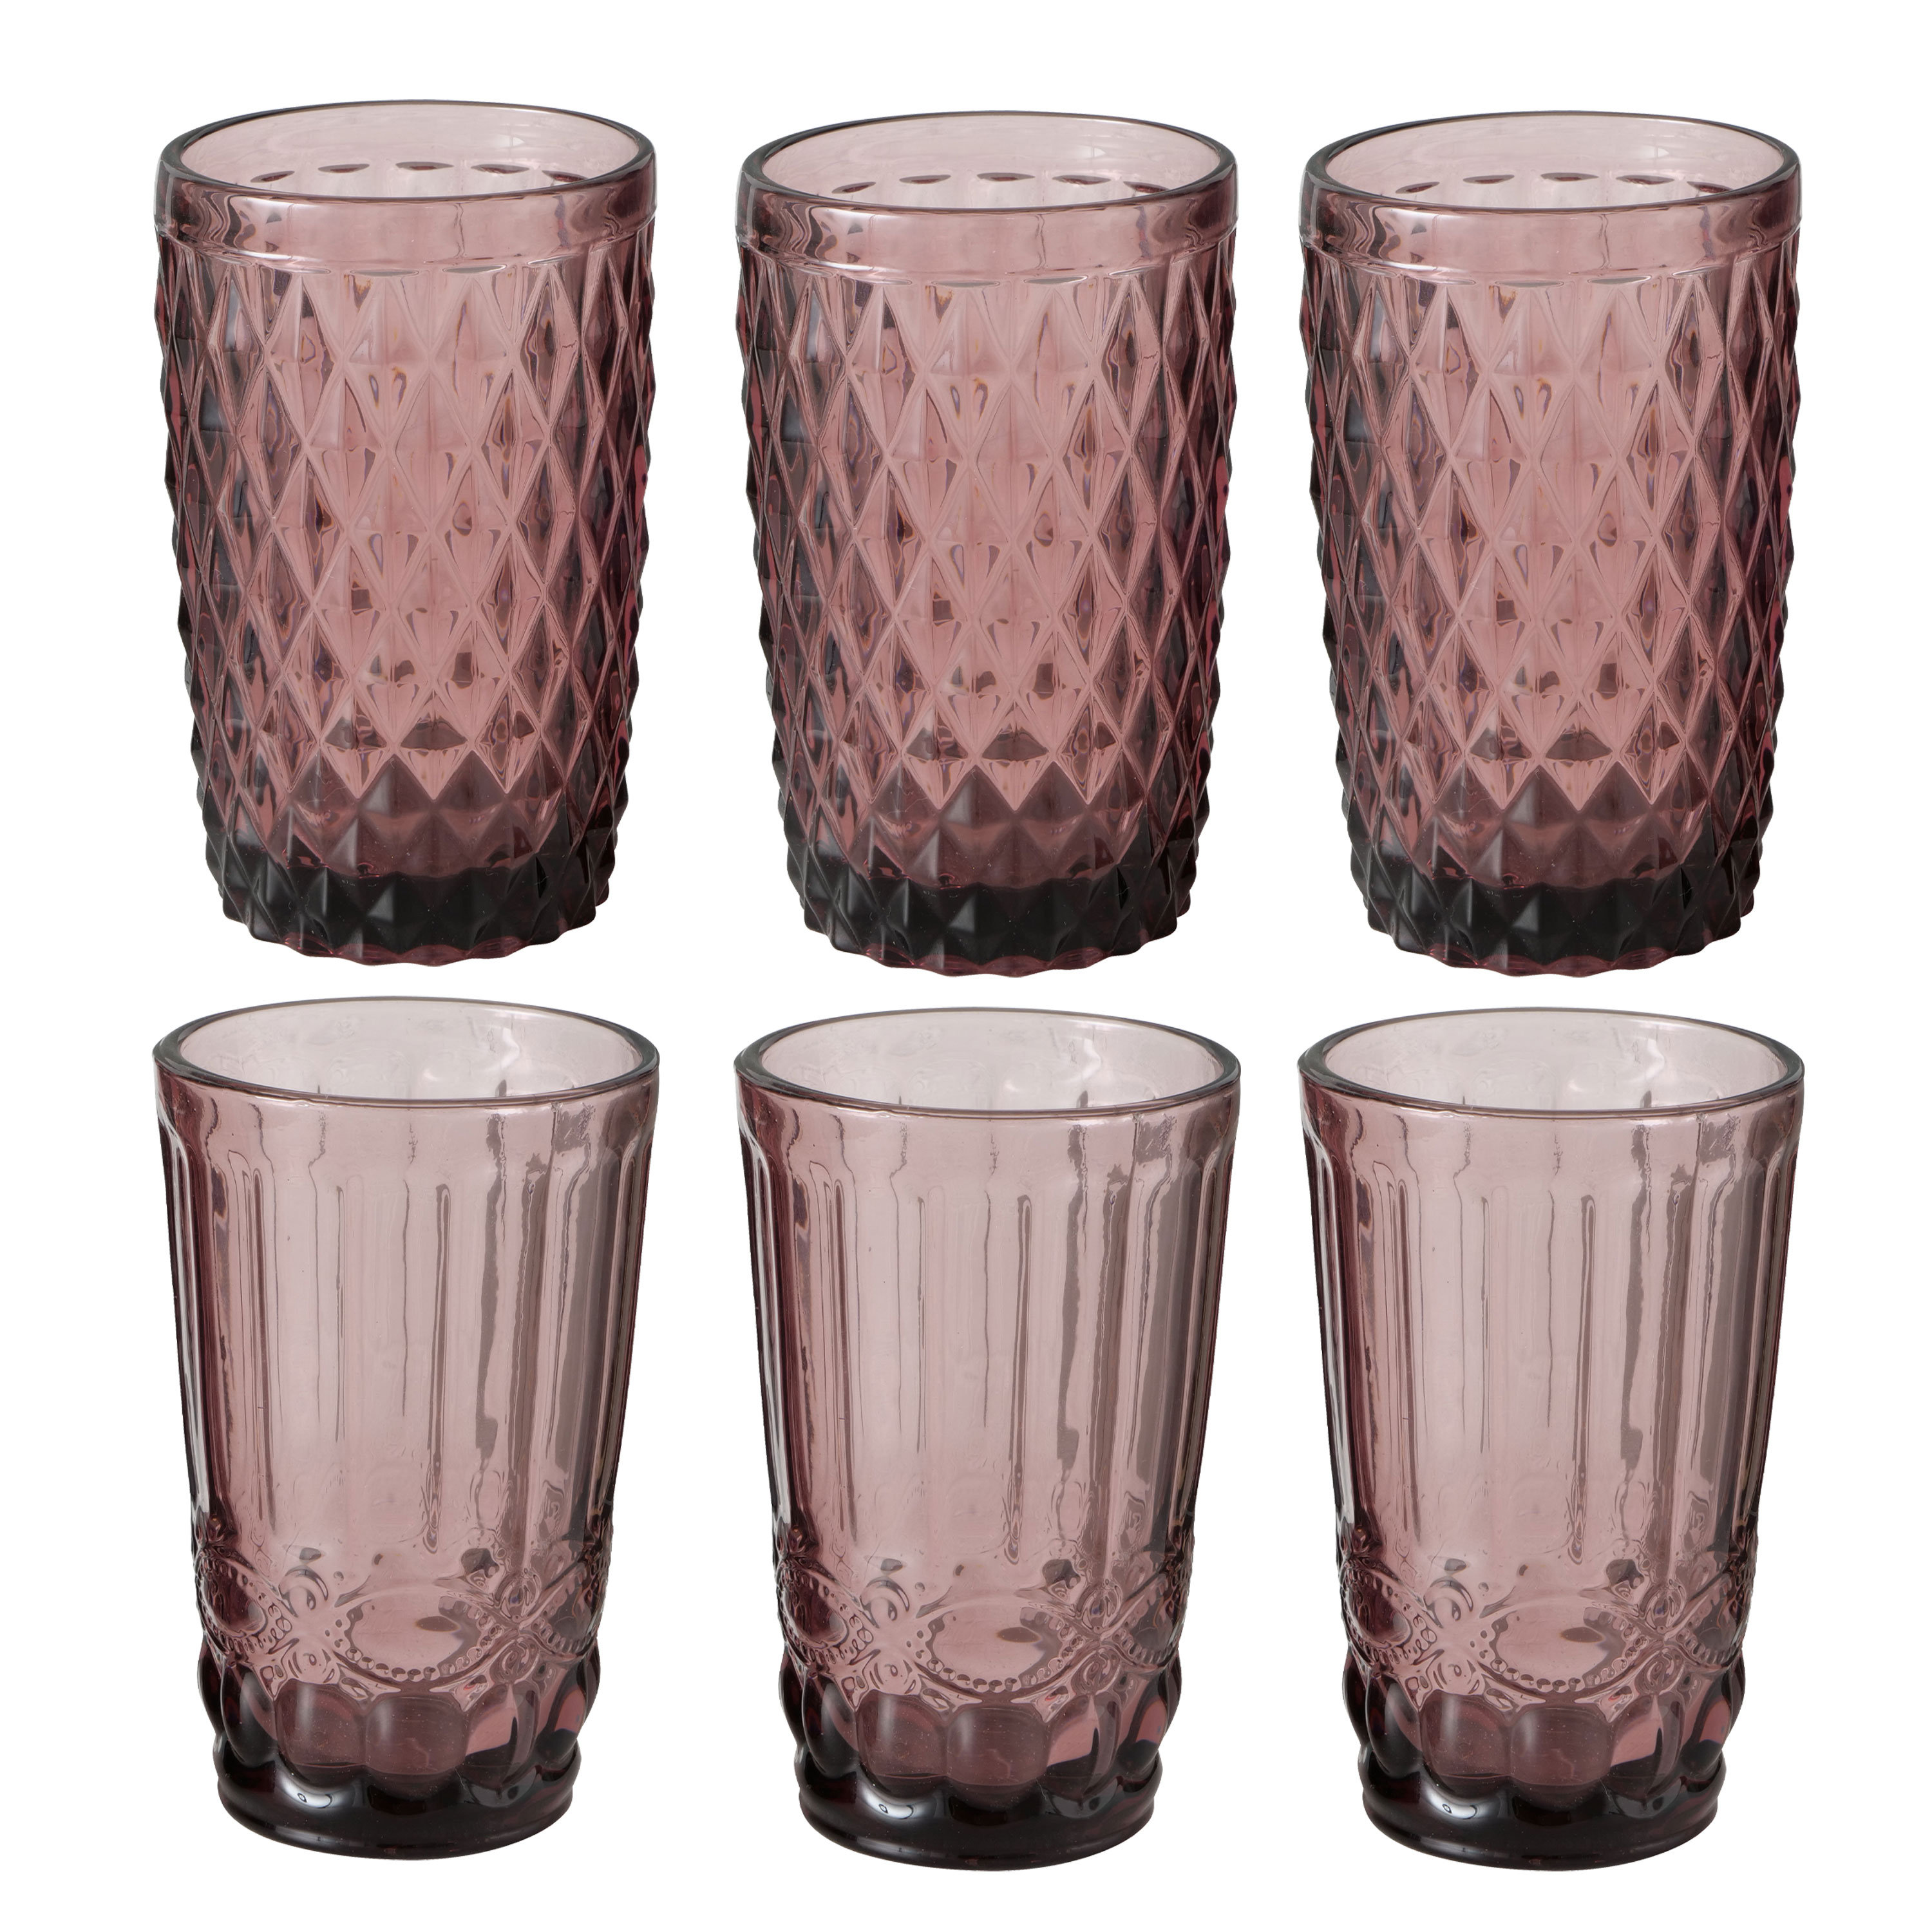 https://assets.wfcdn.com/im/56964711/compr-r85/2466/246618594/brayden-studio-6-piece-12oz-glass-drinking-glass-glassware-set.jpg